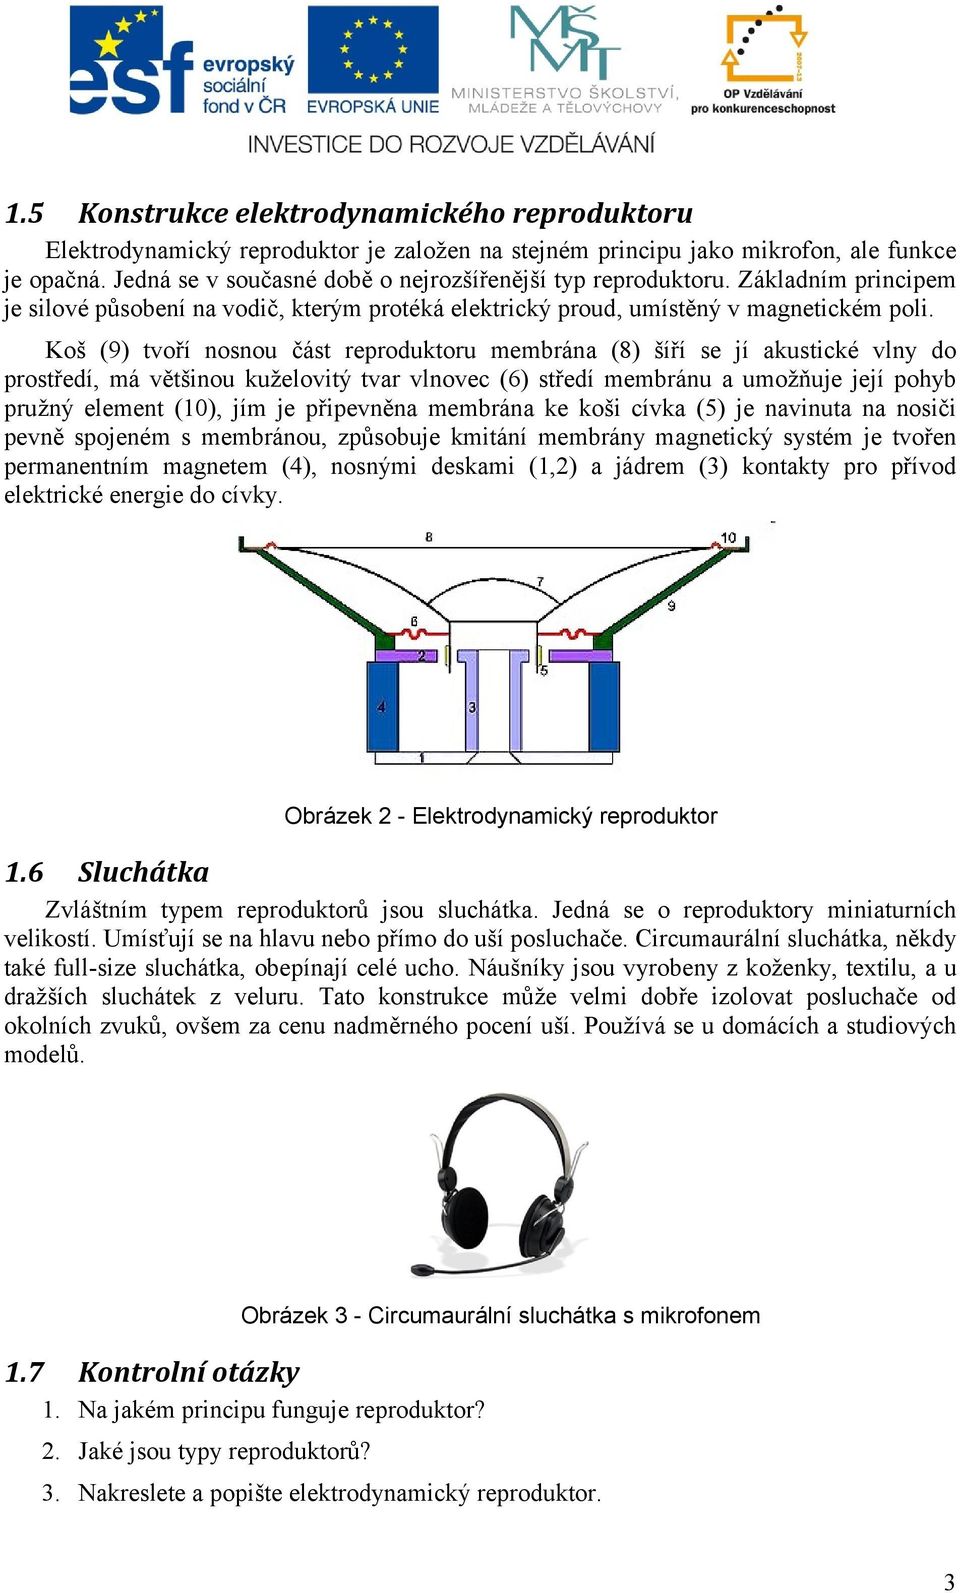 Koš (9) tvoří nosnou část reproduktoru membrána (8) šíří se jí akustické vlny do prostředí, má většinou kuželovitý tvar vlnovec (6) středí membránu a umožňuje její pohyb pružný element (10), jím je